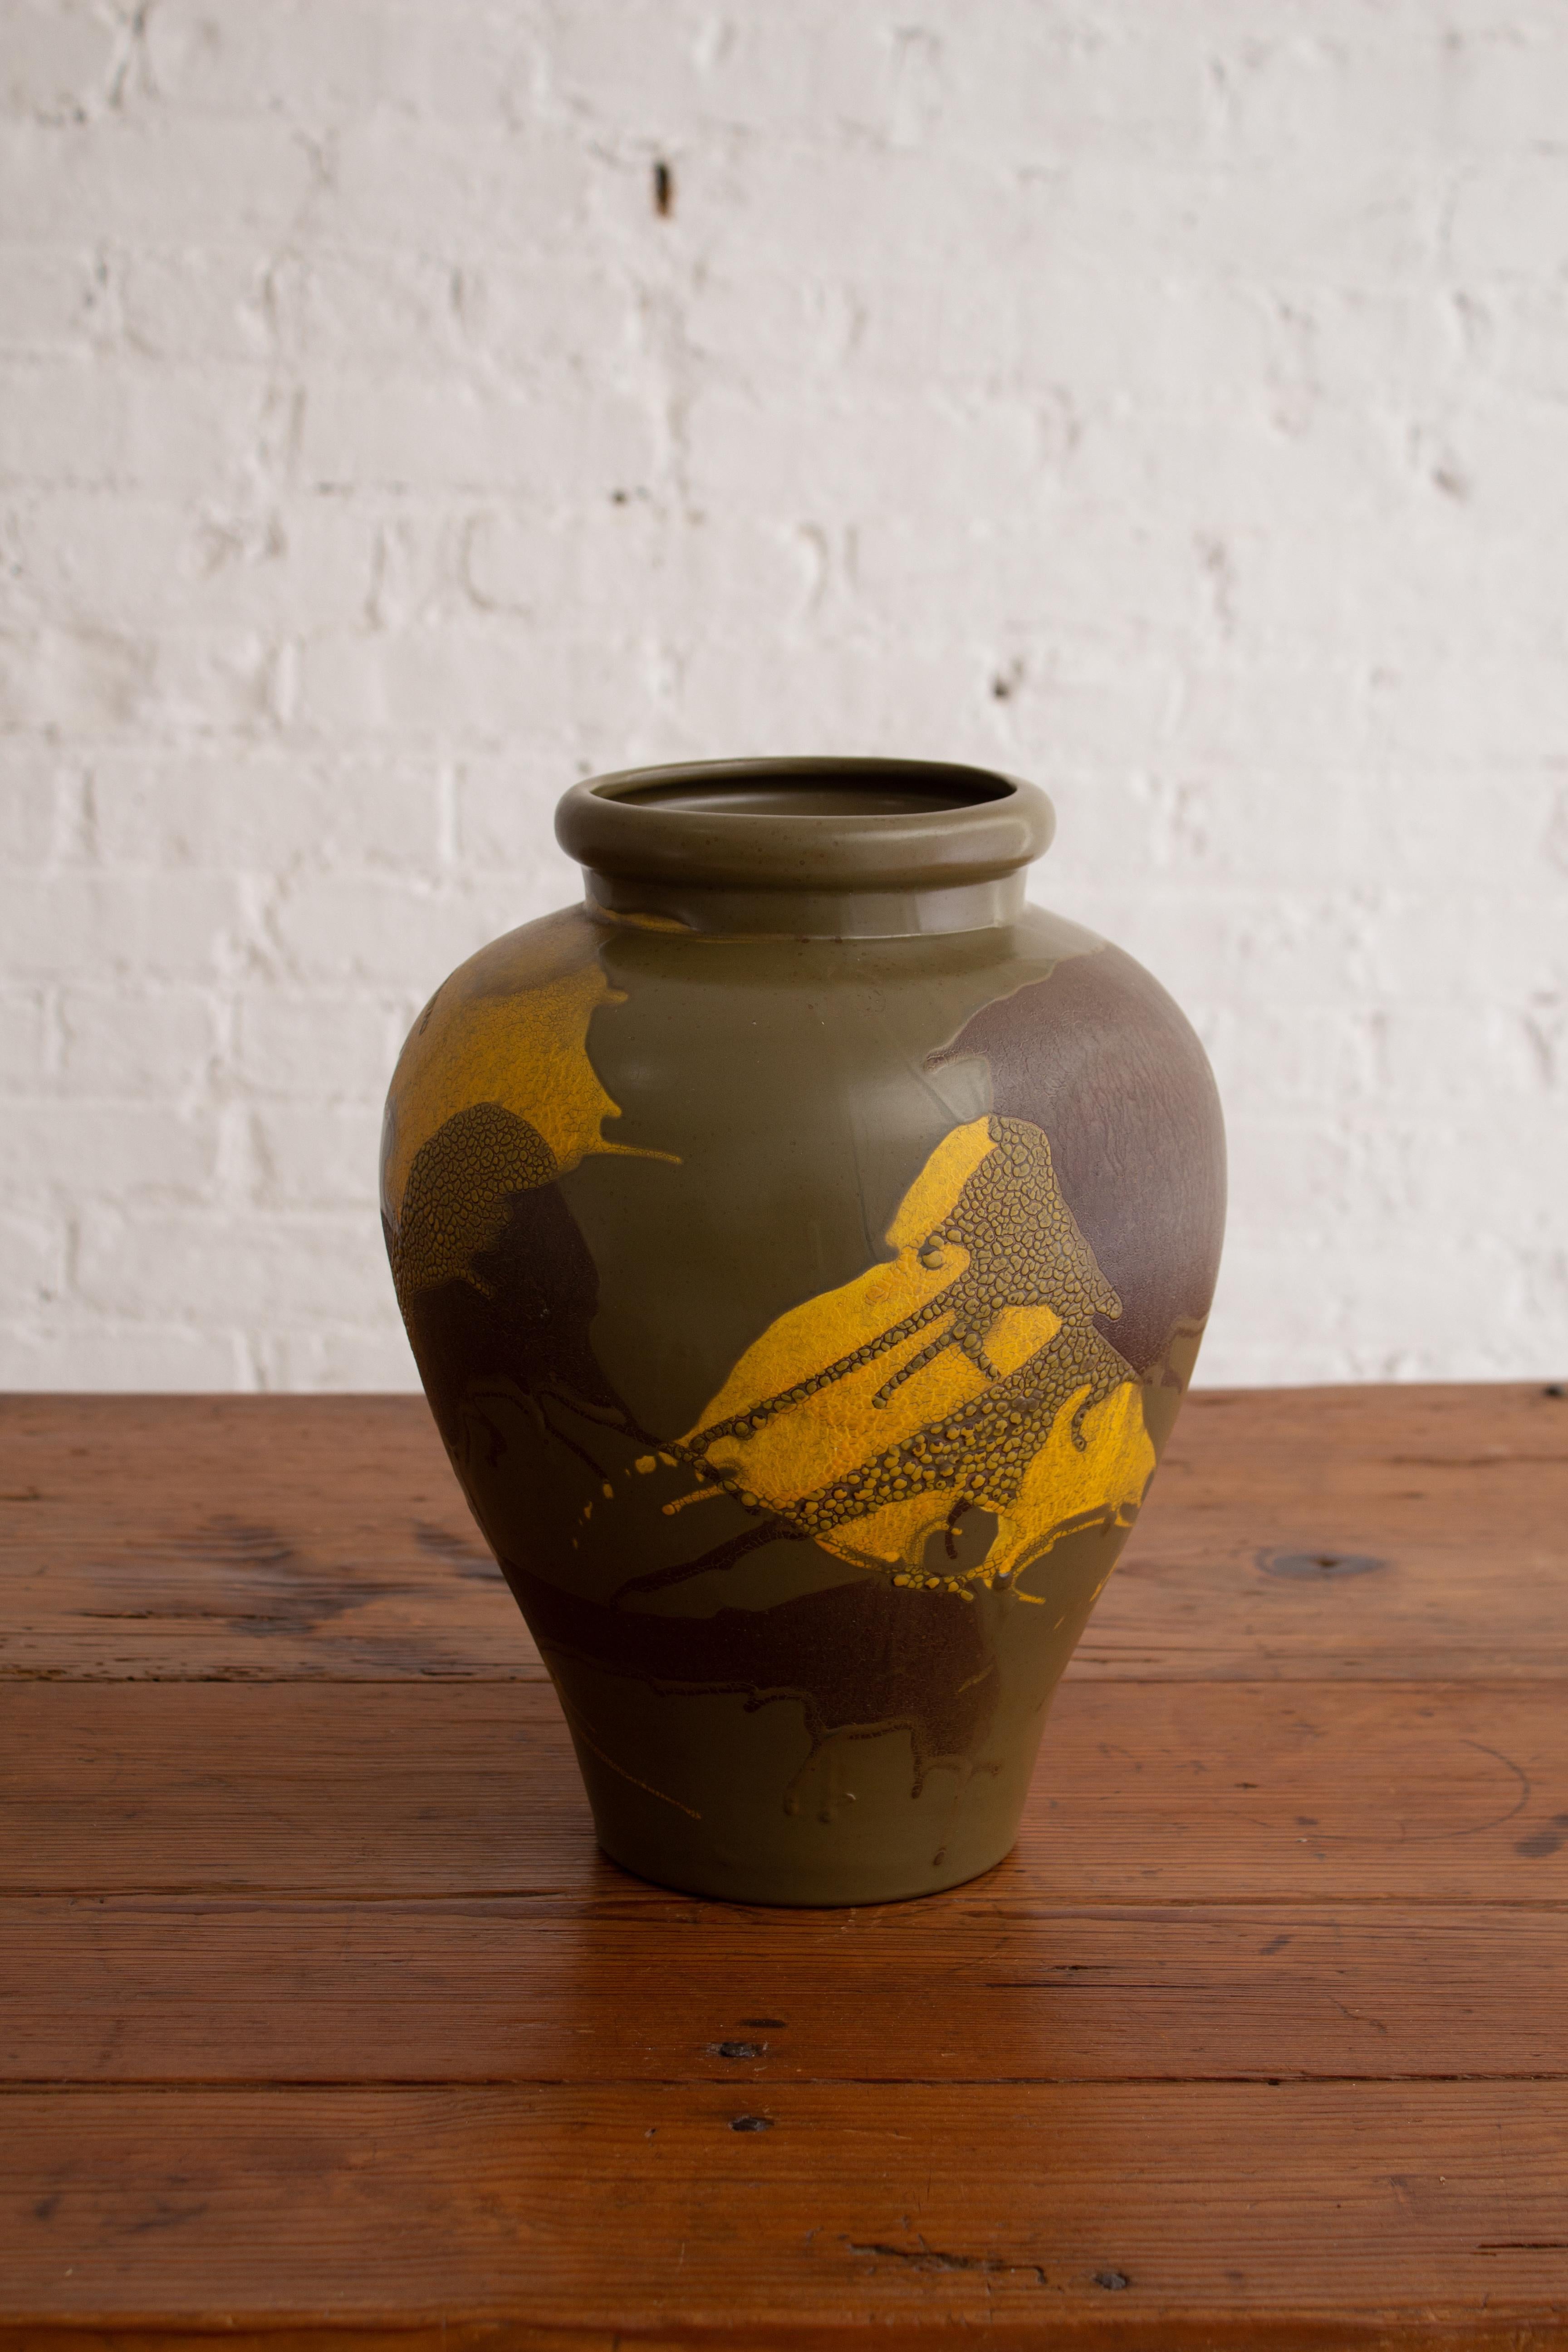 Glazed Royal Haeger “Earth Wrap” Urn Form Vase For Sale